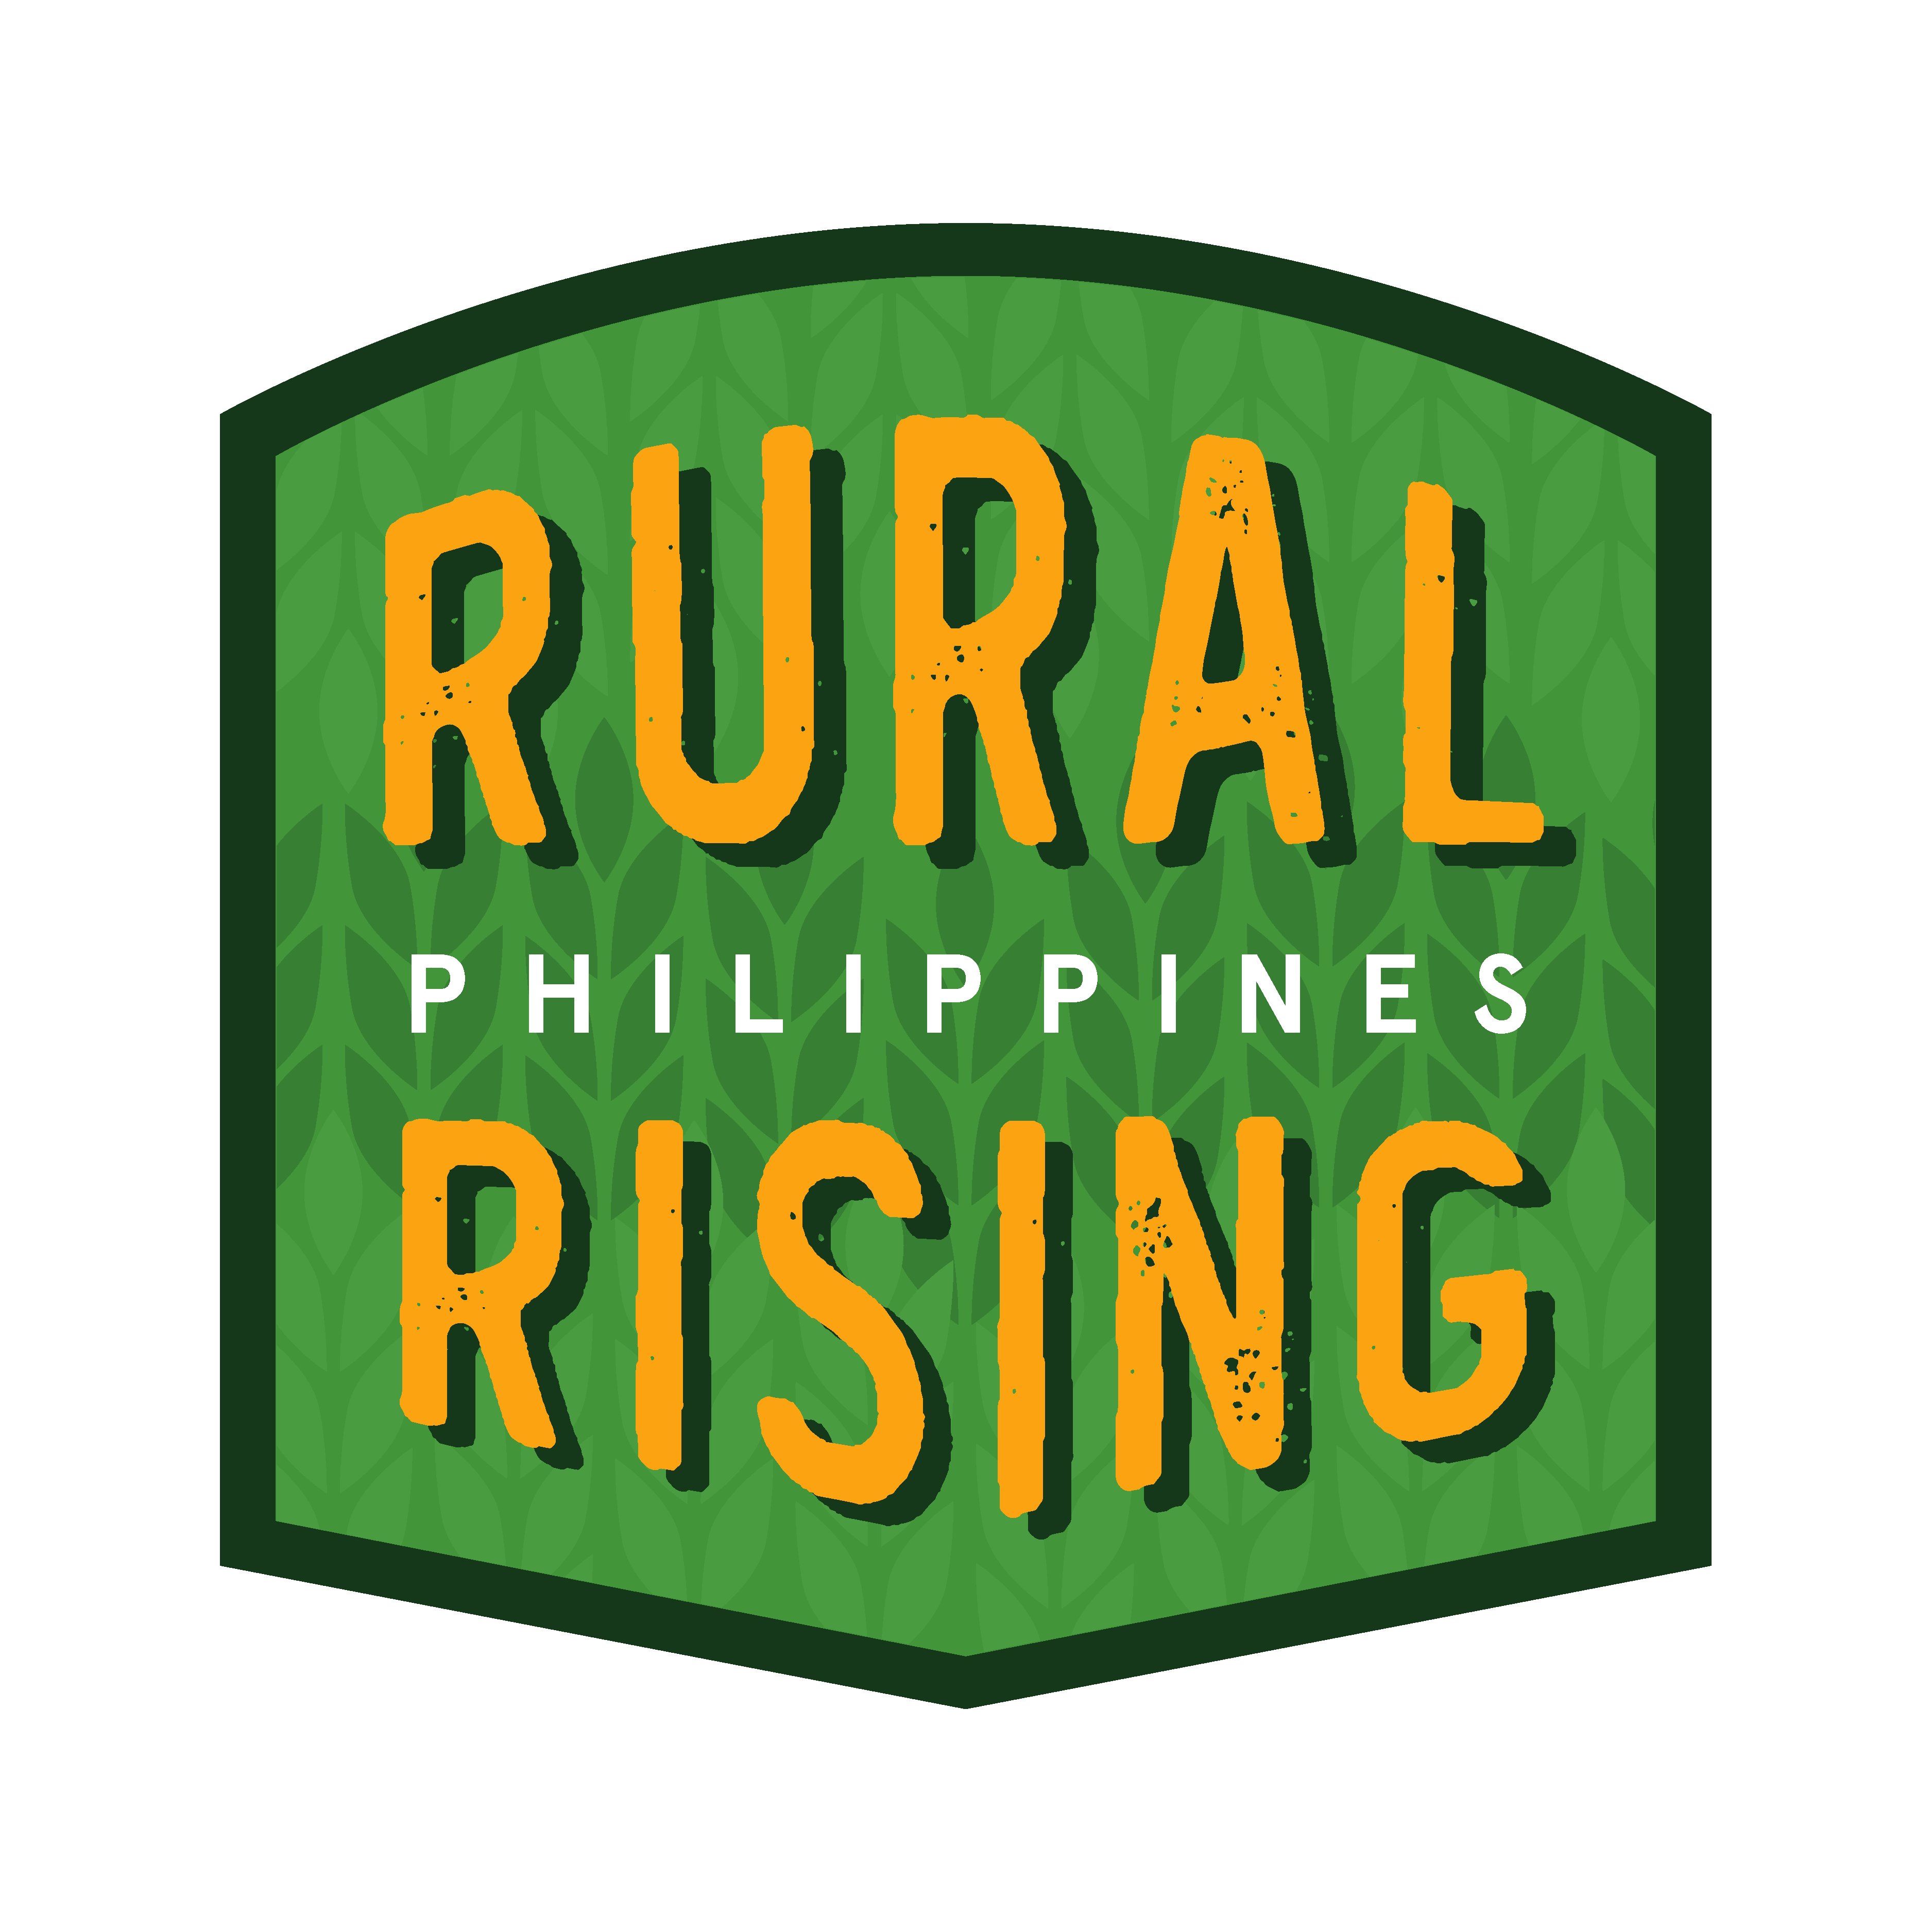 Rural Rising PH